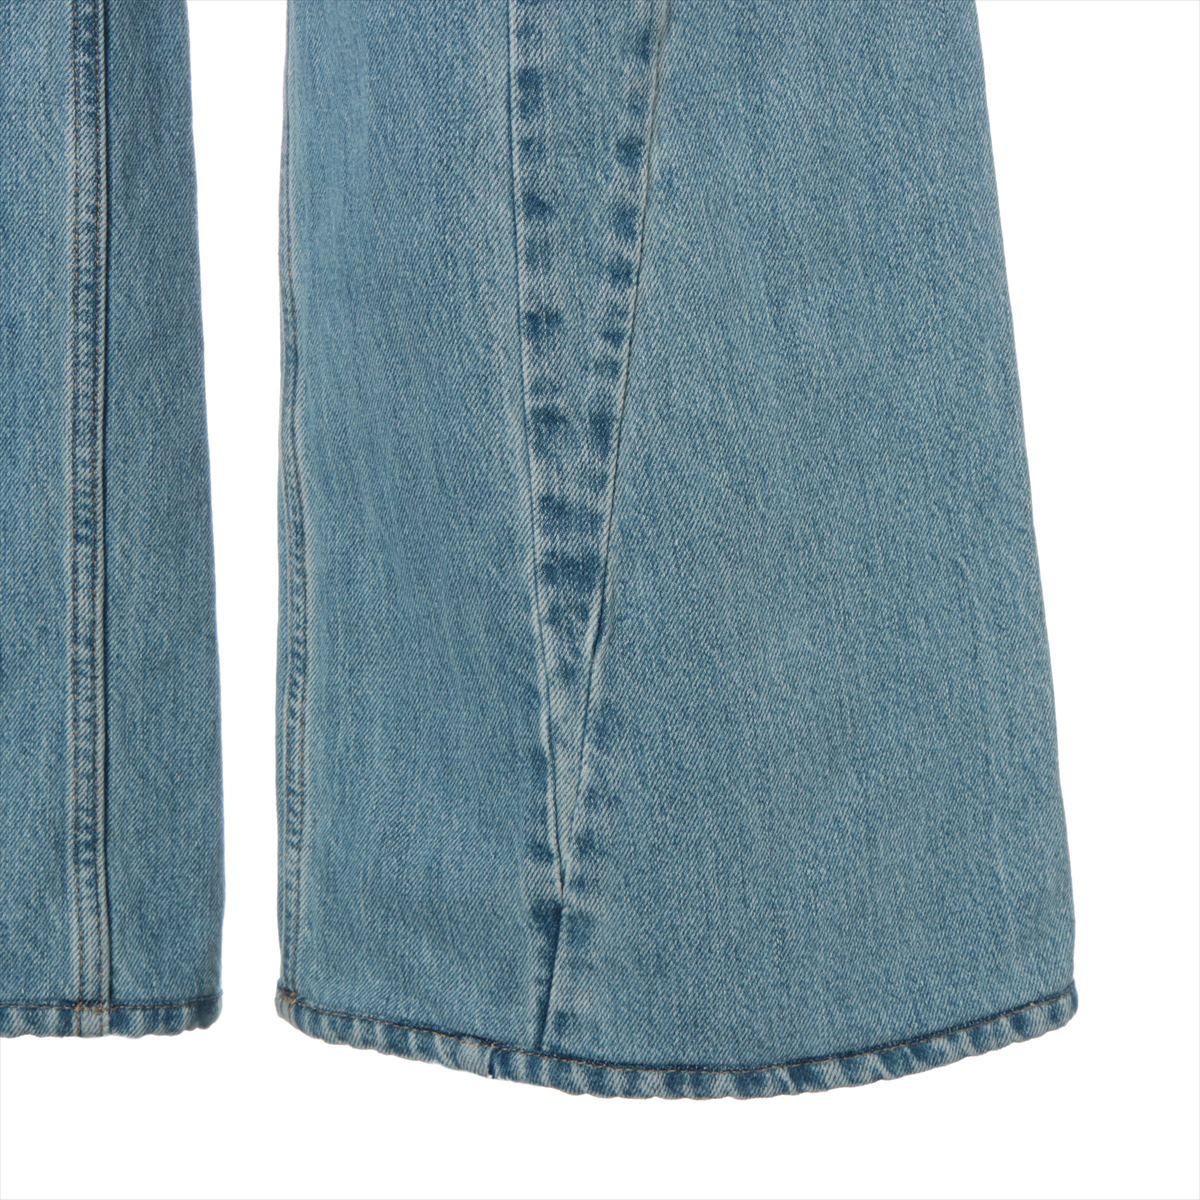 Maison Margiela 23SS Cotton Denim pants 36 Ladies' Blue  S51LA0128 restructured wide denim